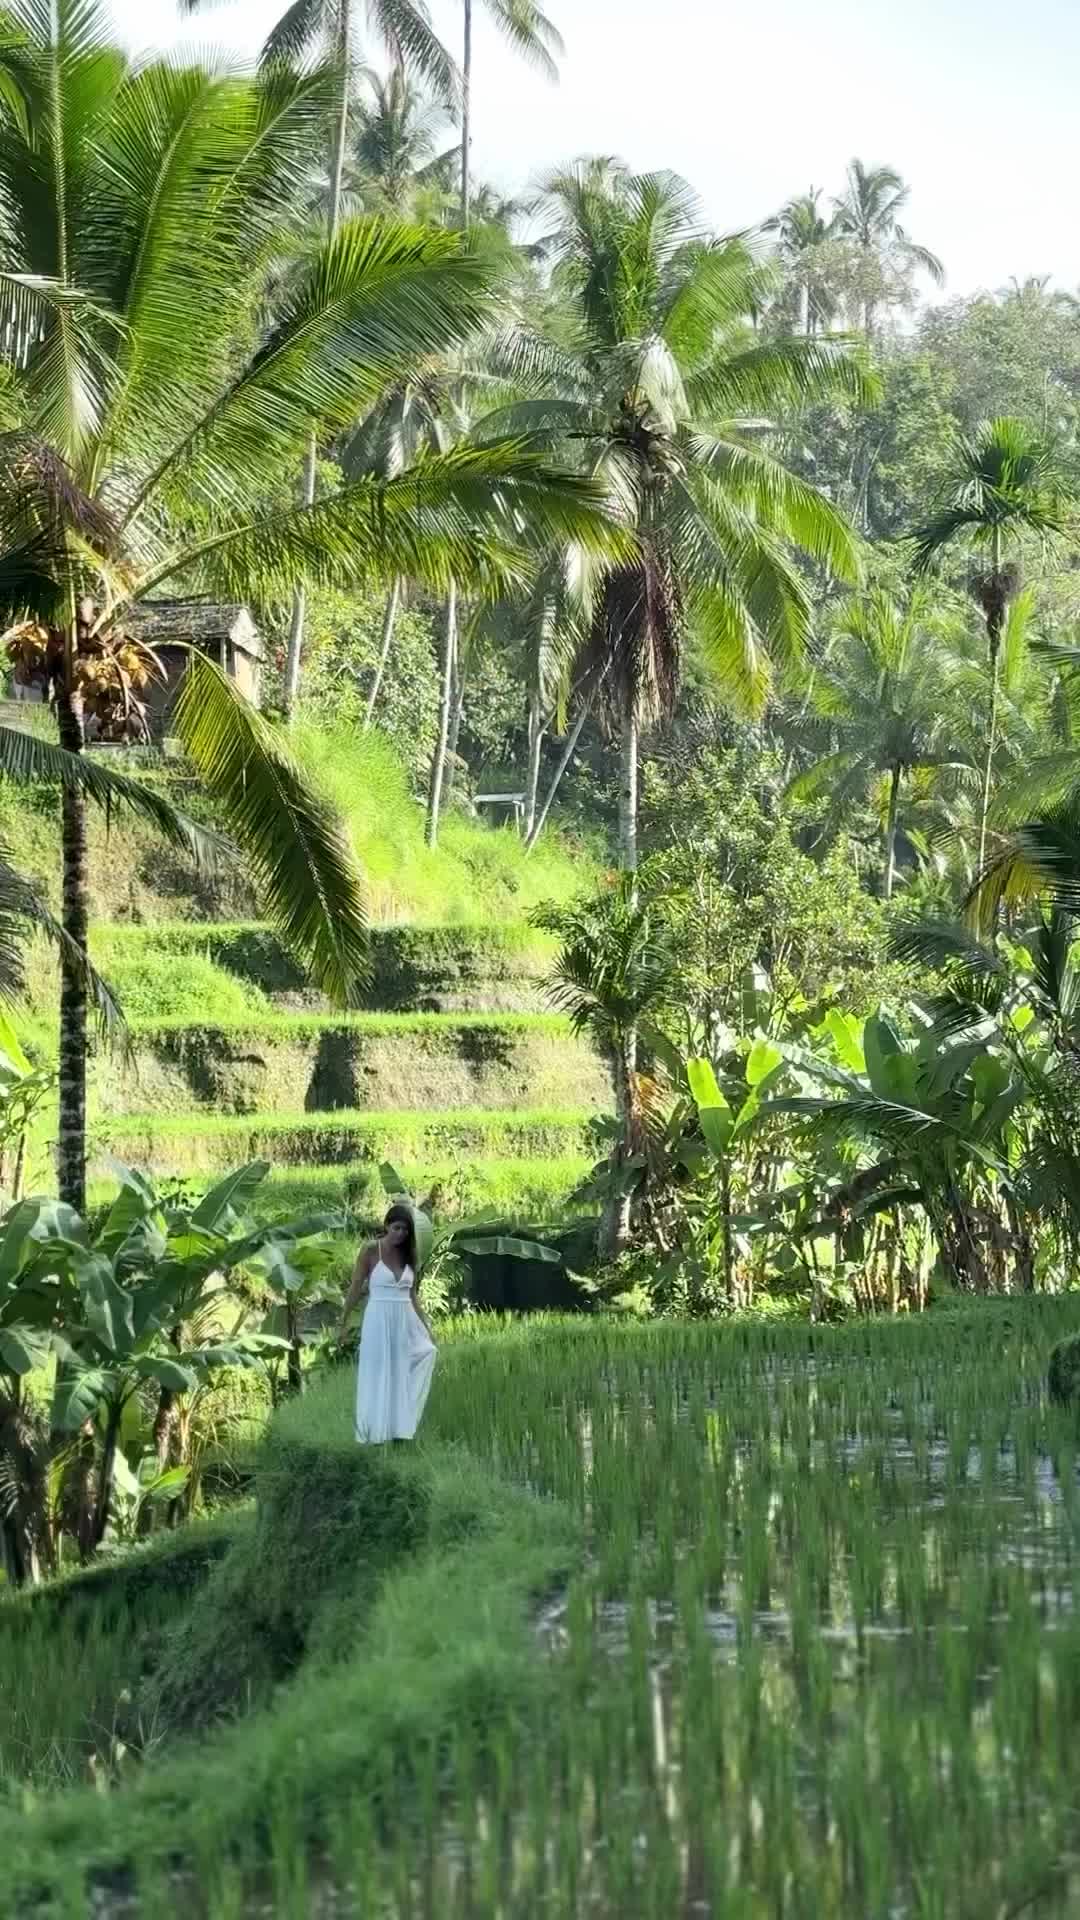 Ubud Rice Fields: A Dream Come True in Bali